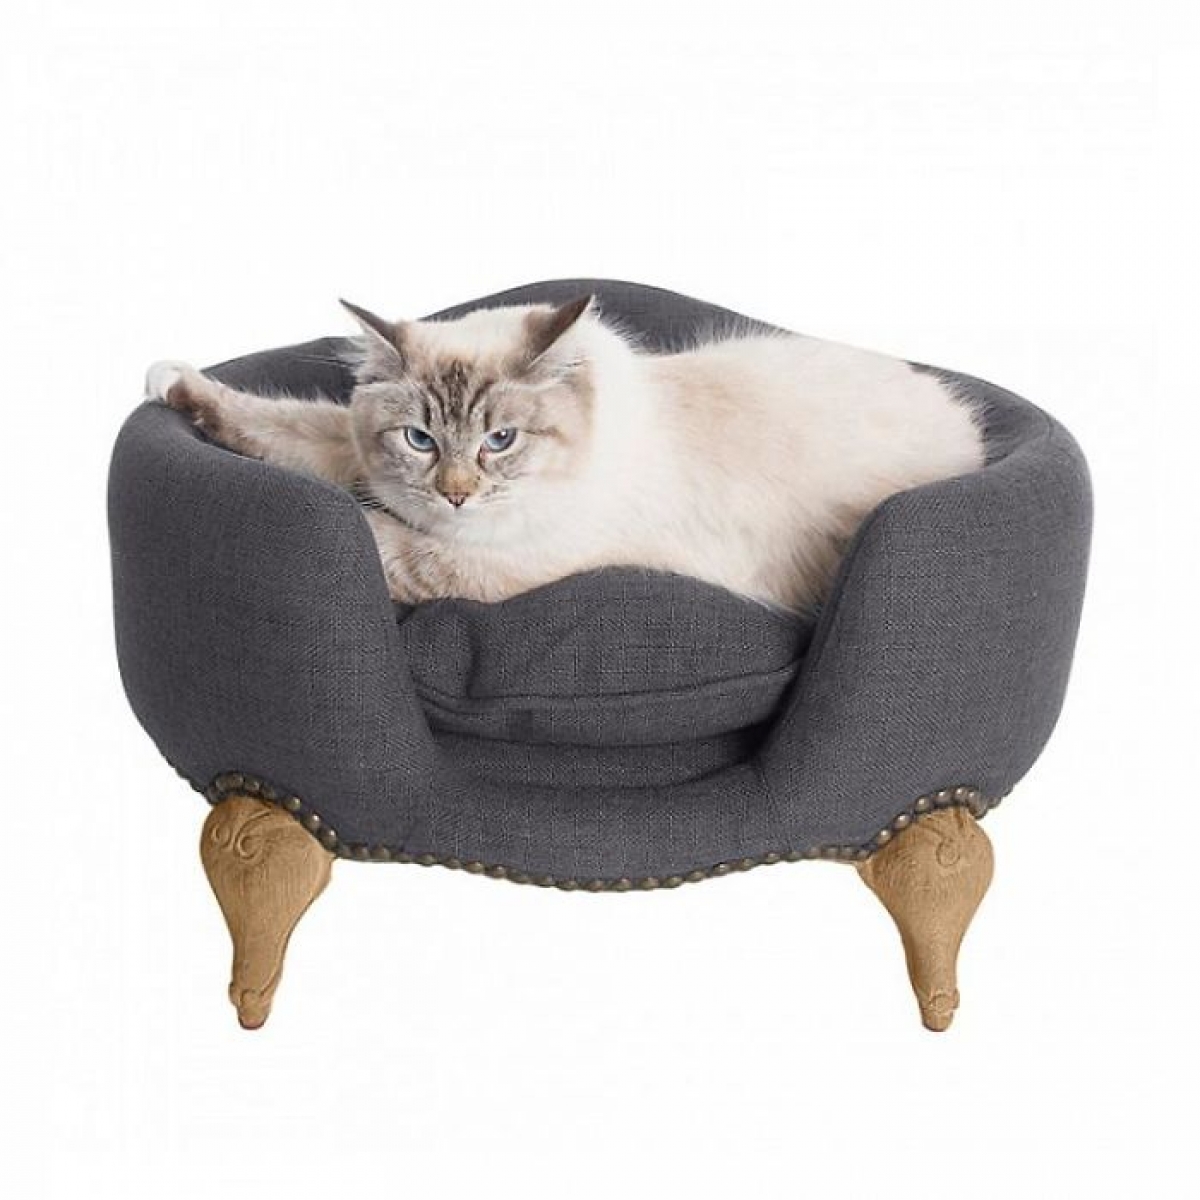 Vẻ oai vệ của chú mèo khi nằm trên chiếc giường màu xám chân gỗ nạm đinh có giá 925 đô./.